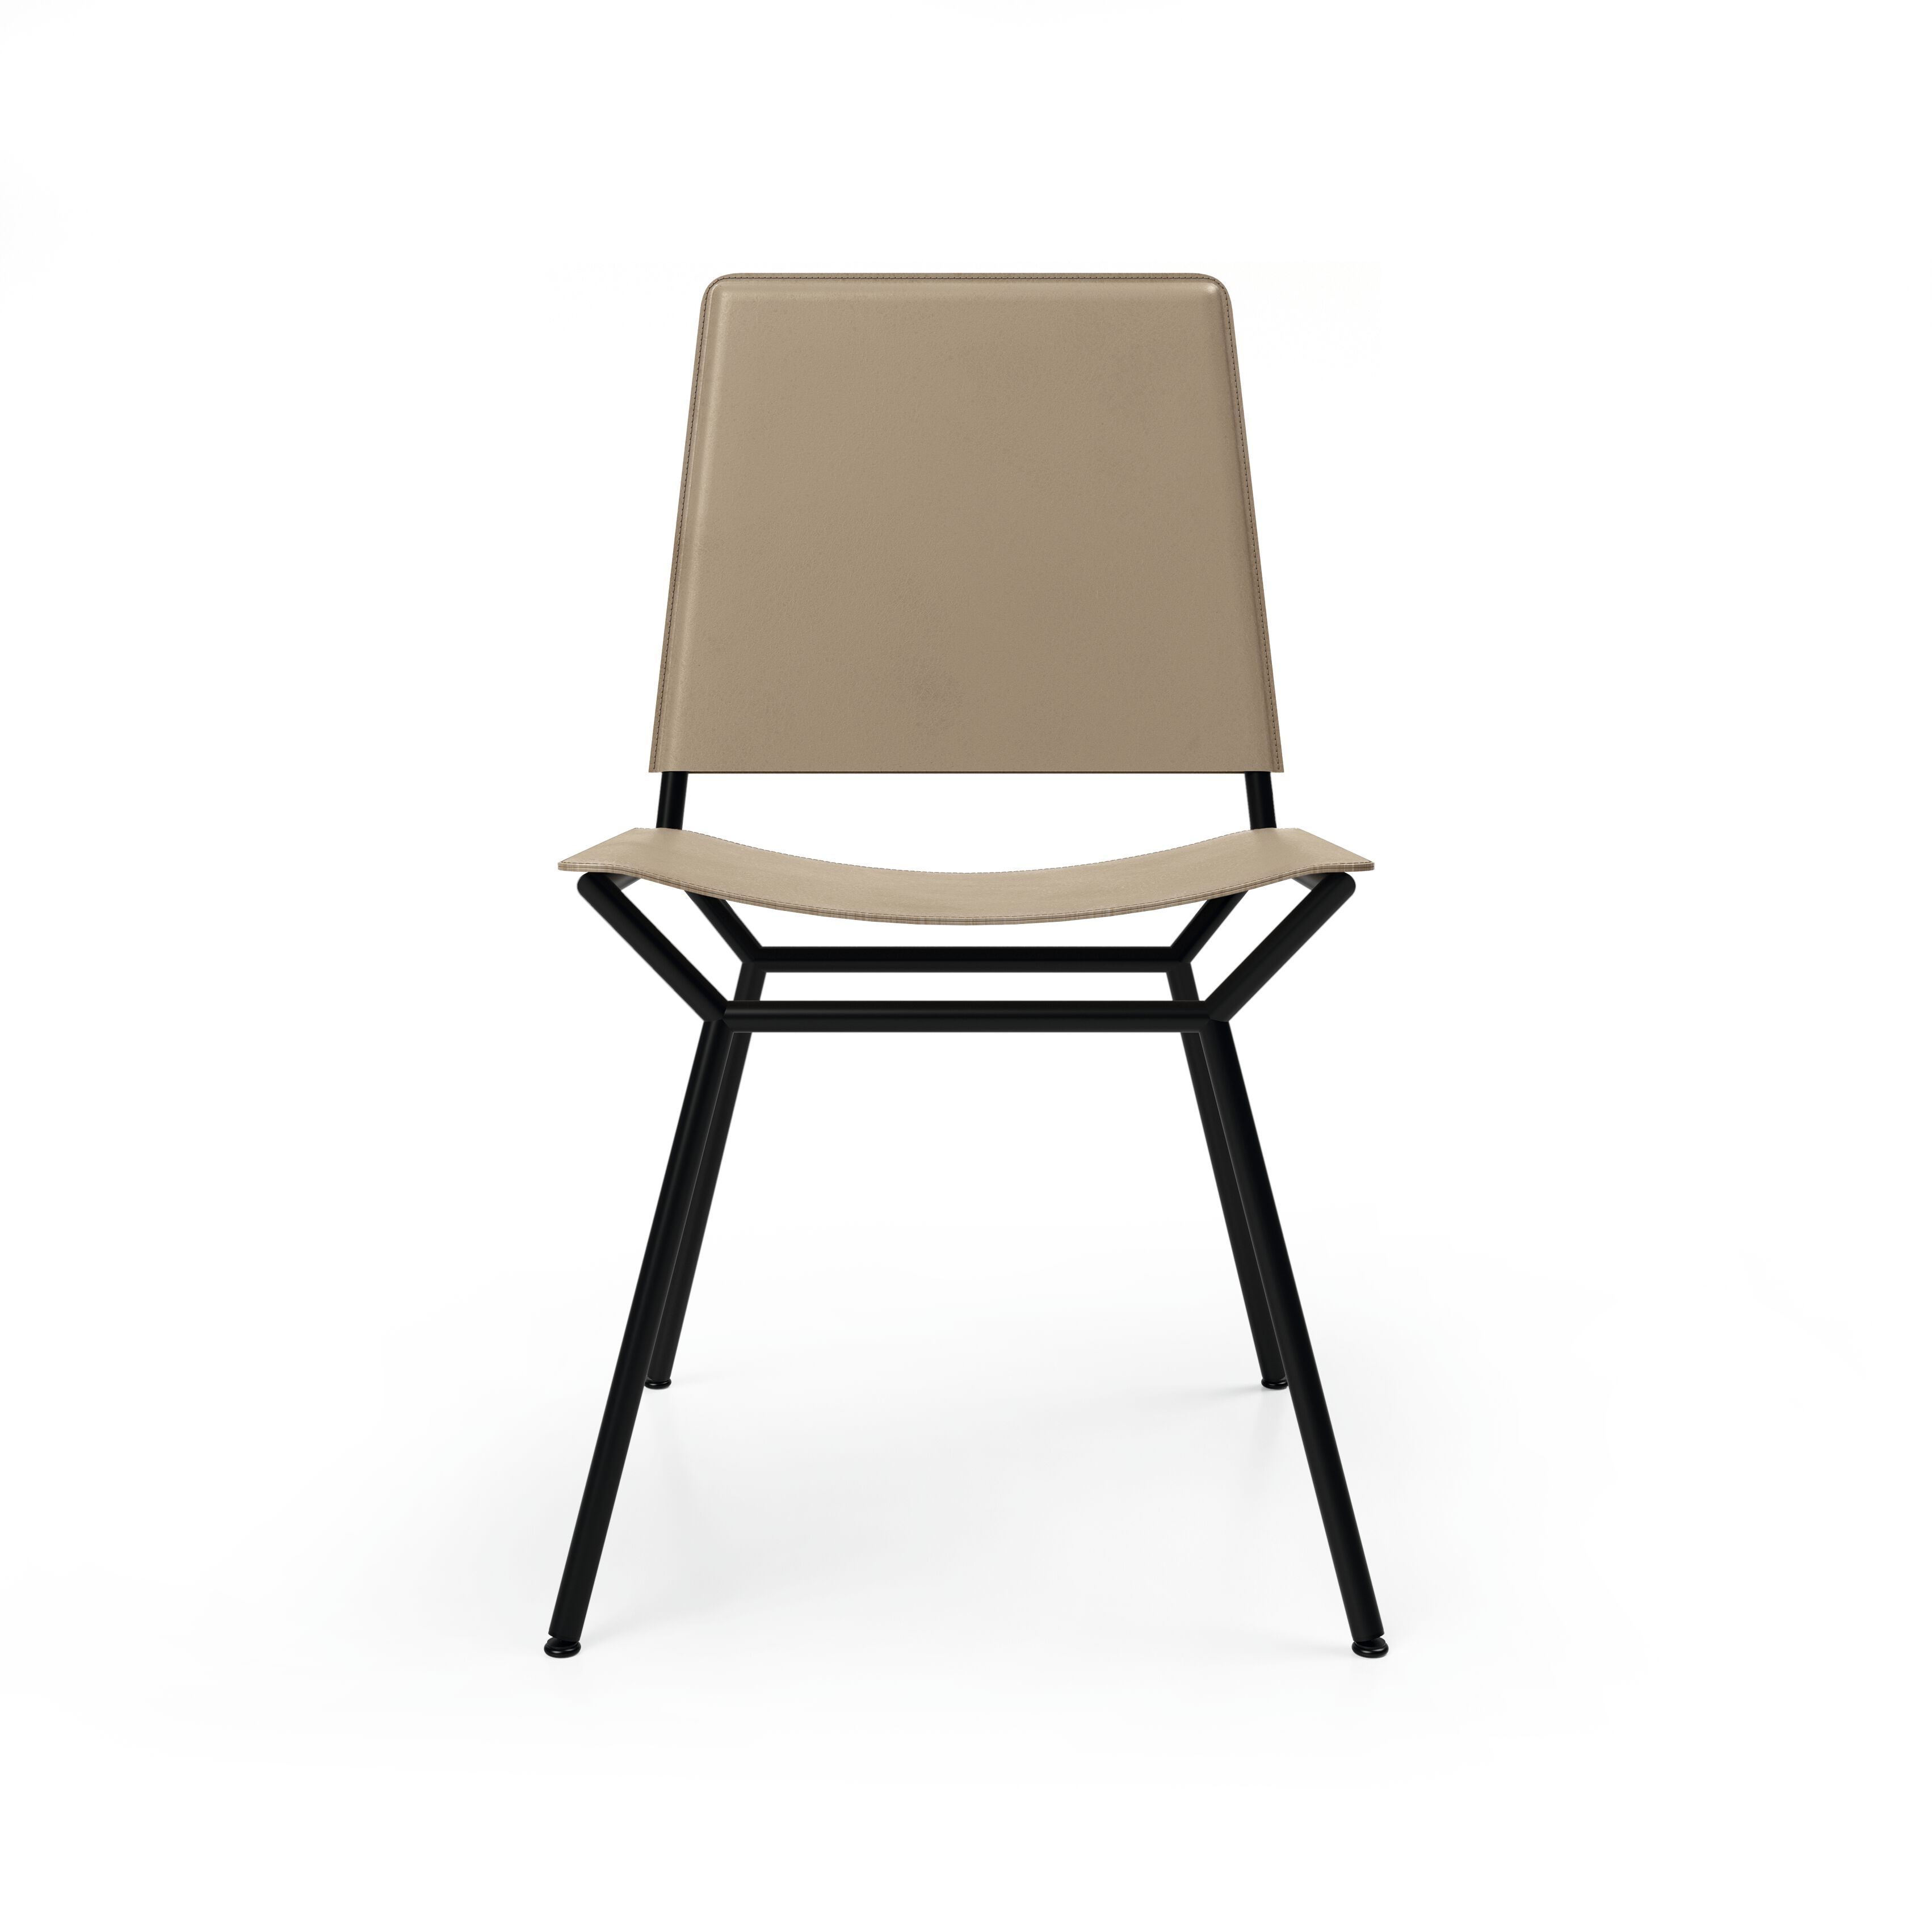 05_WK-Aisuu-Chair-0005.tif